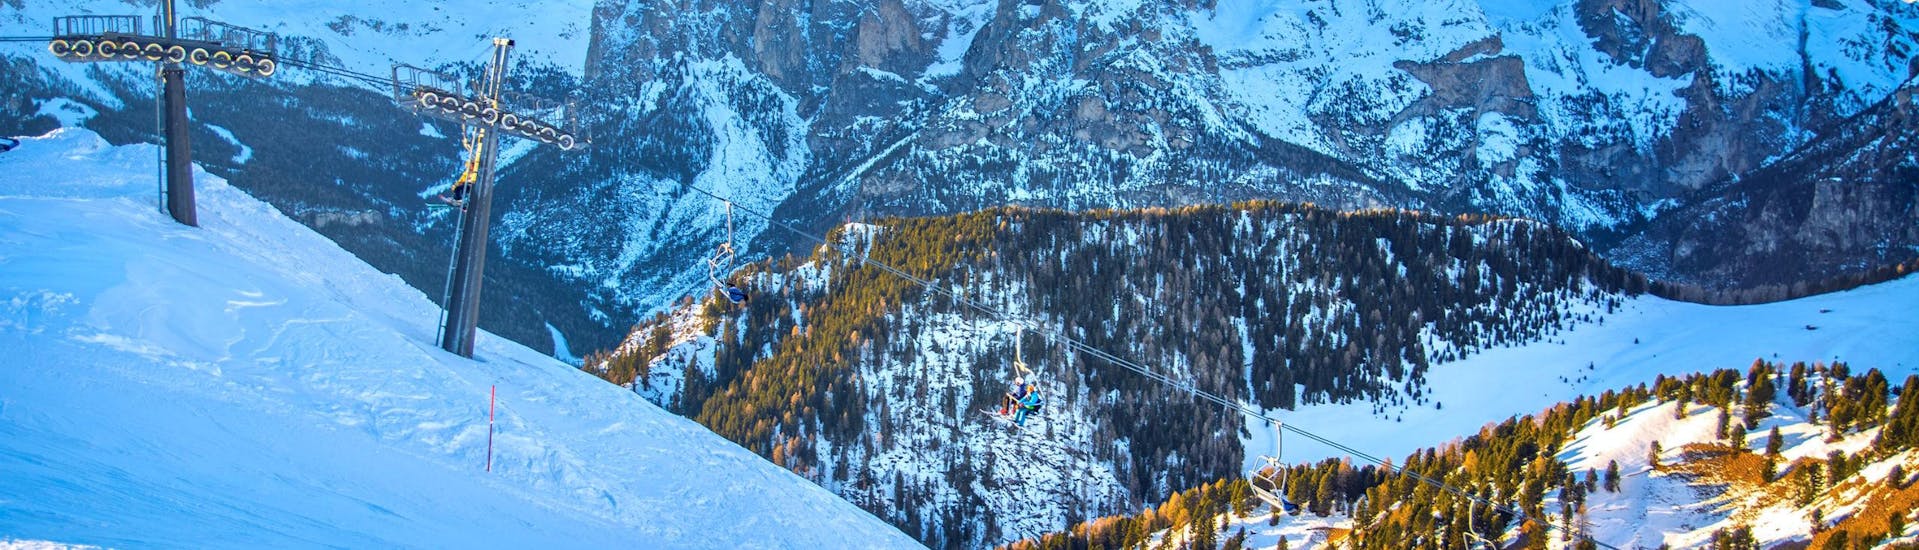 Eine Gruppe Skifahrer fährt mit dem Sessellift den Berg hinauf um dort mit dem von einer örtlichen Skischule organisierten Skikurs in Vigo di Fassa zu beginnen.